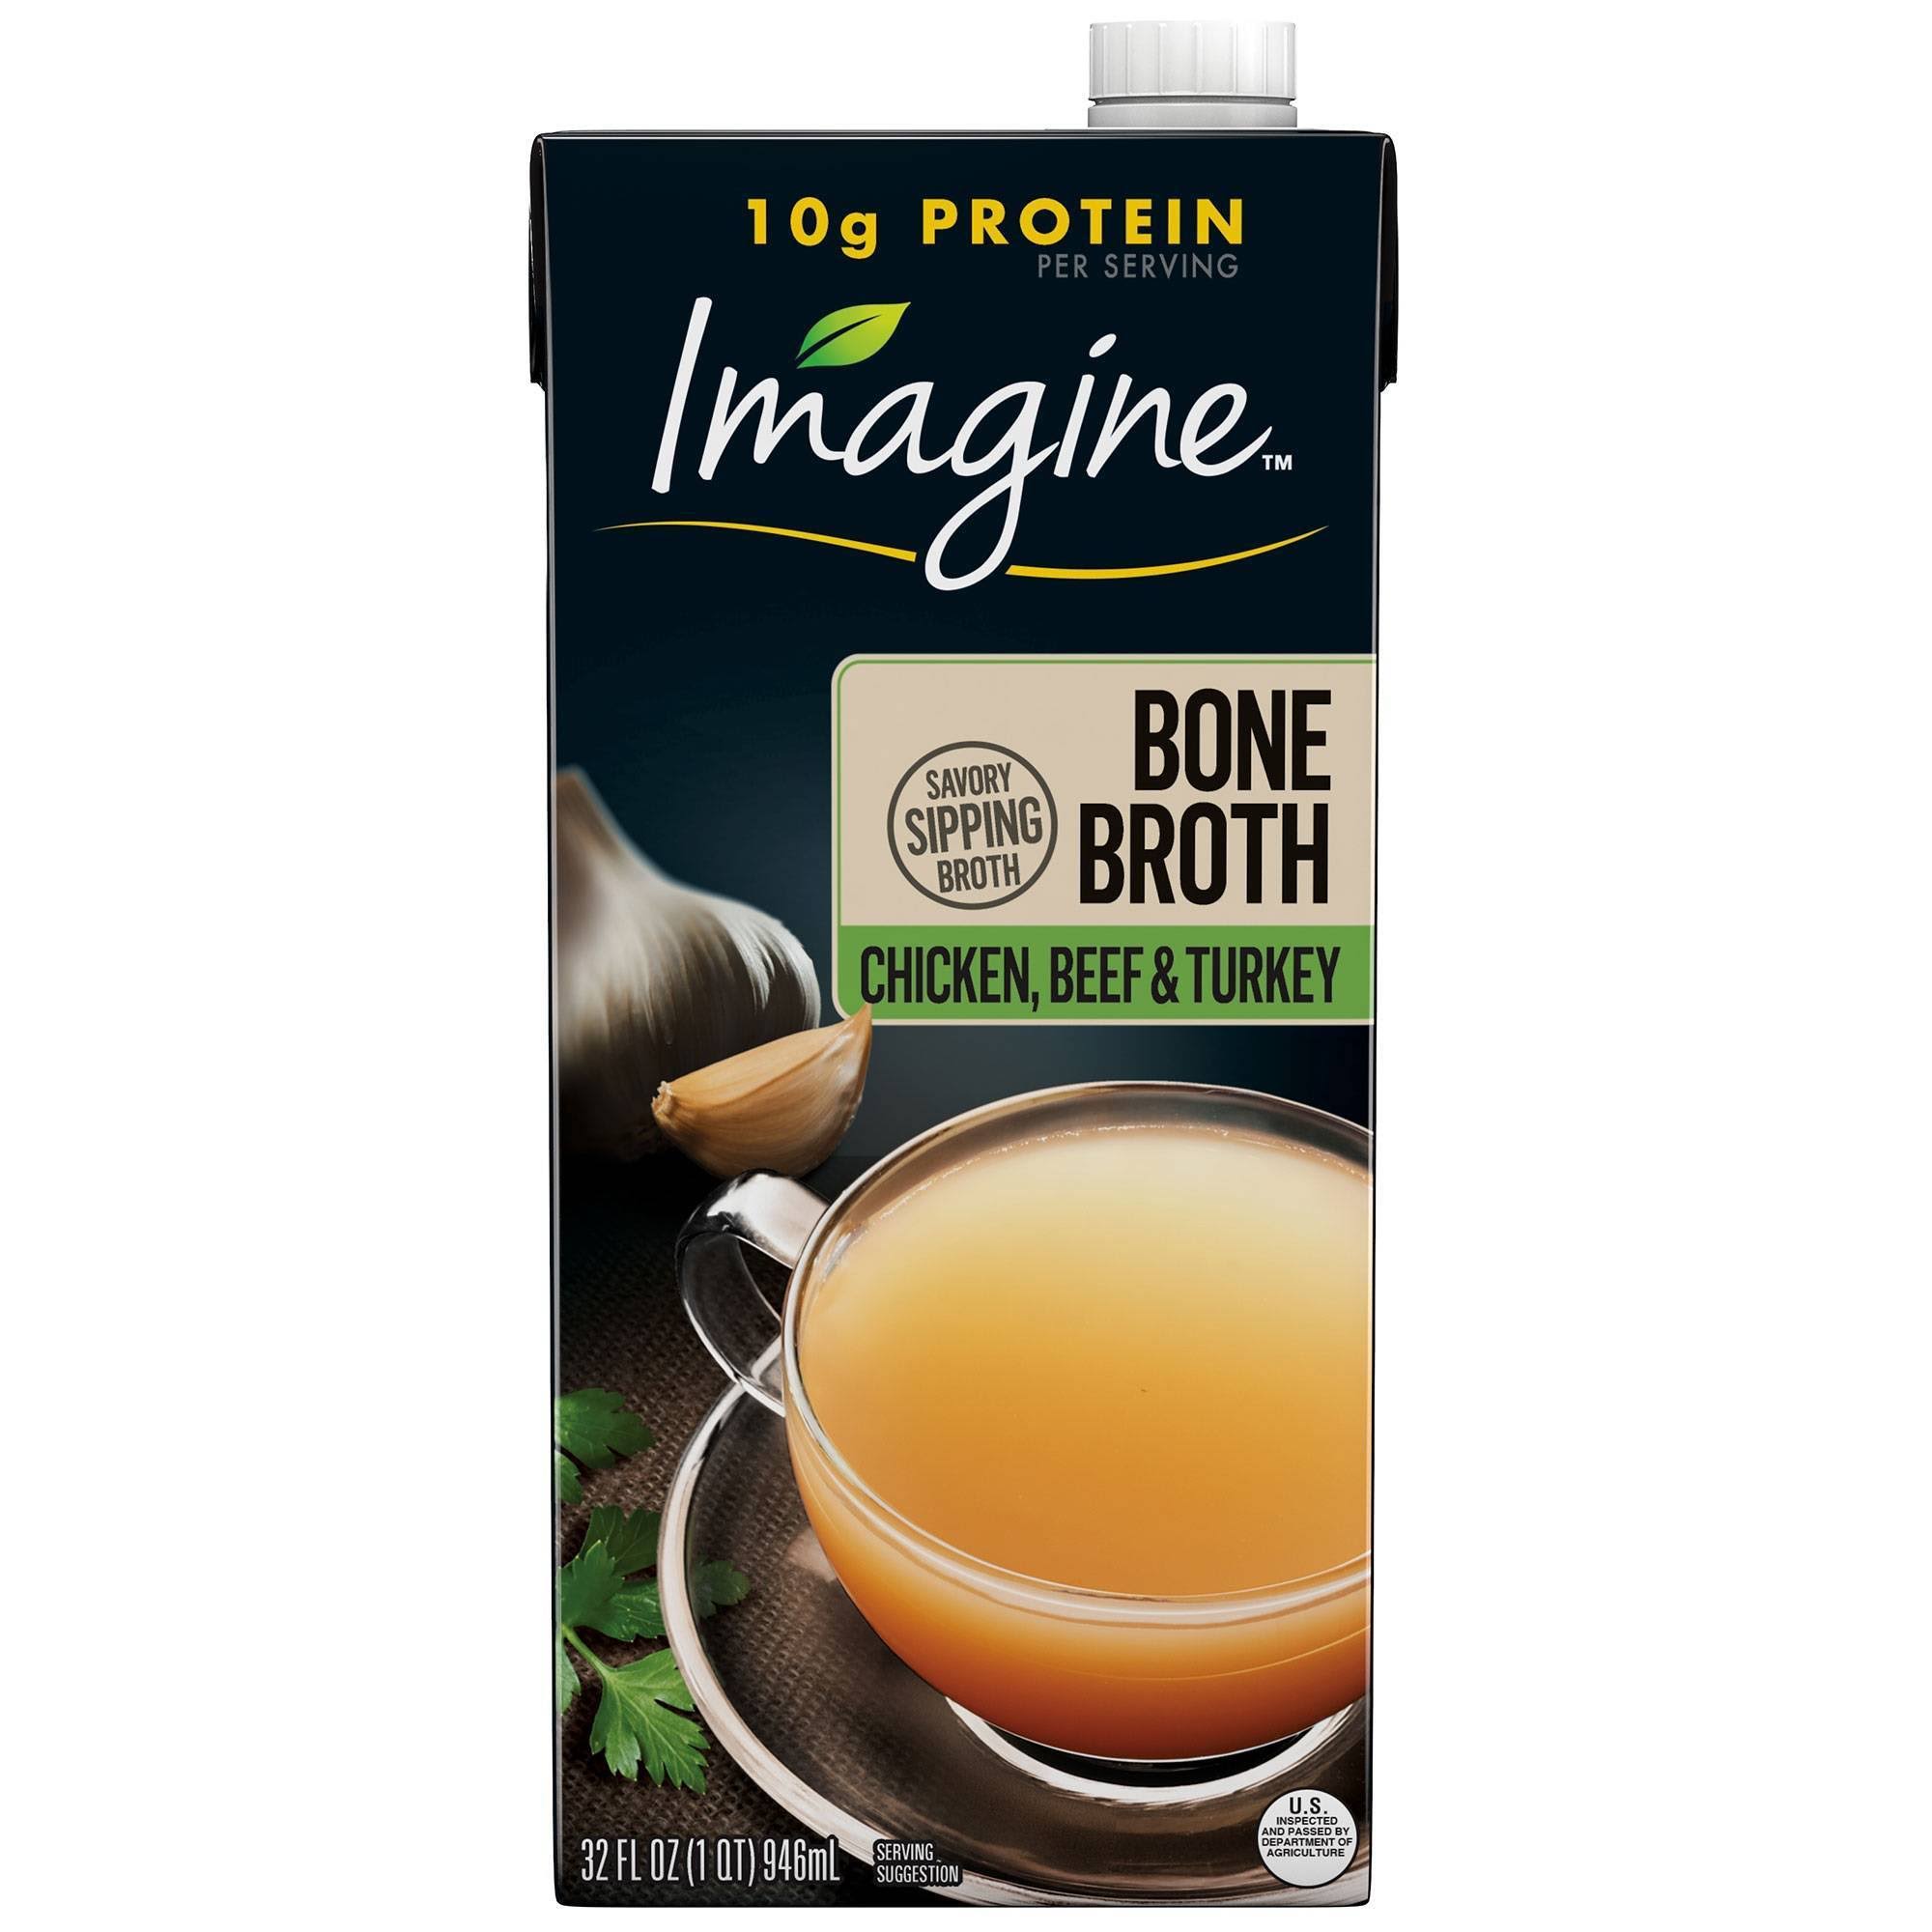 Imagine Bone Broth, Chicken Beef & Turkey - 32 fl oz